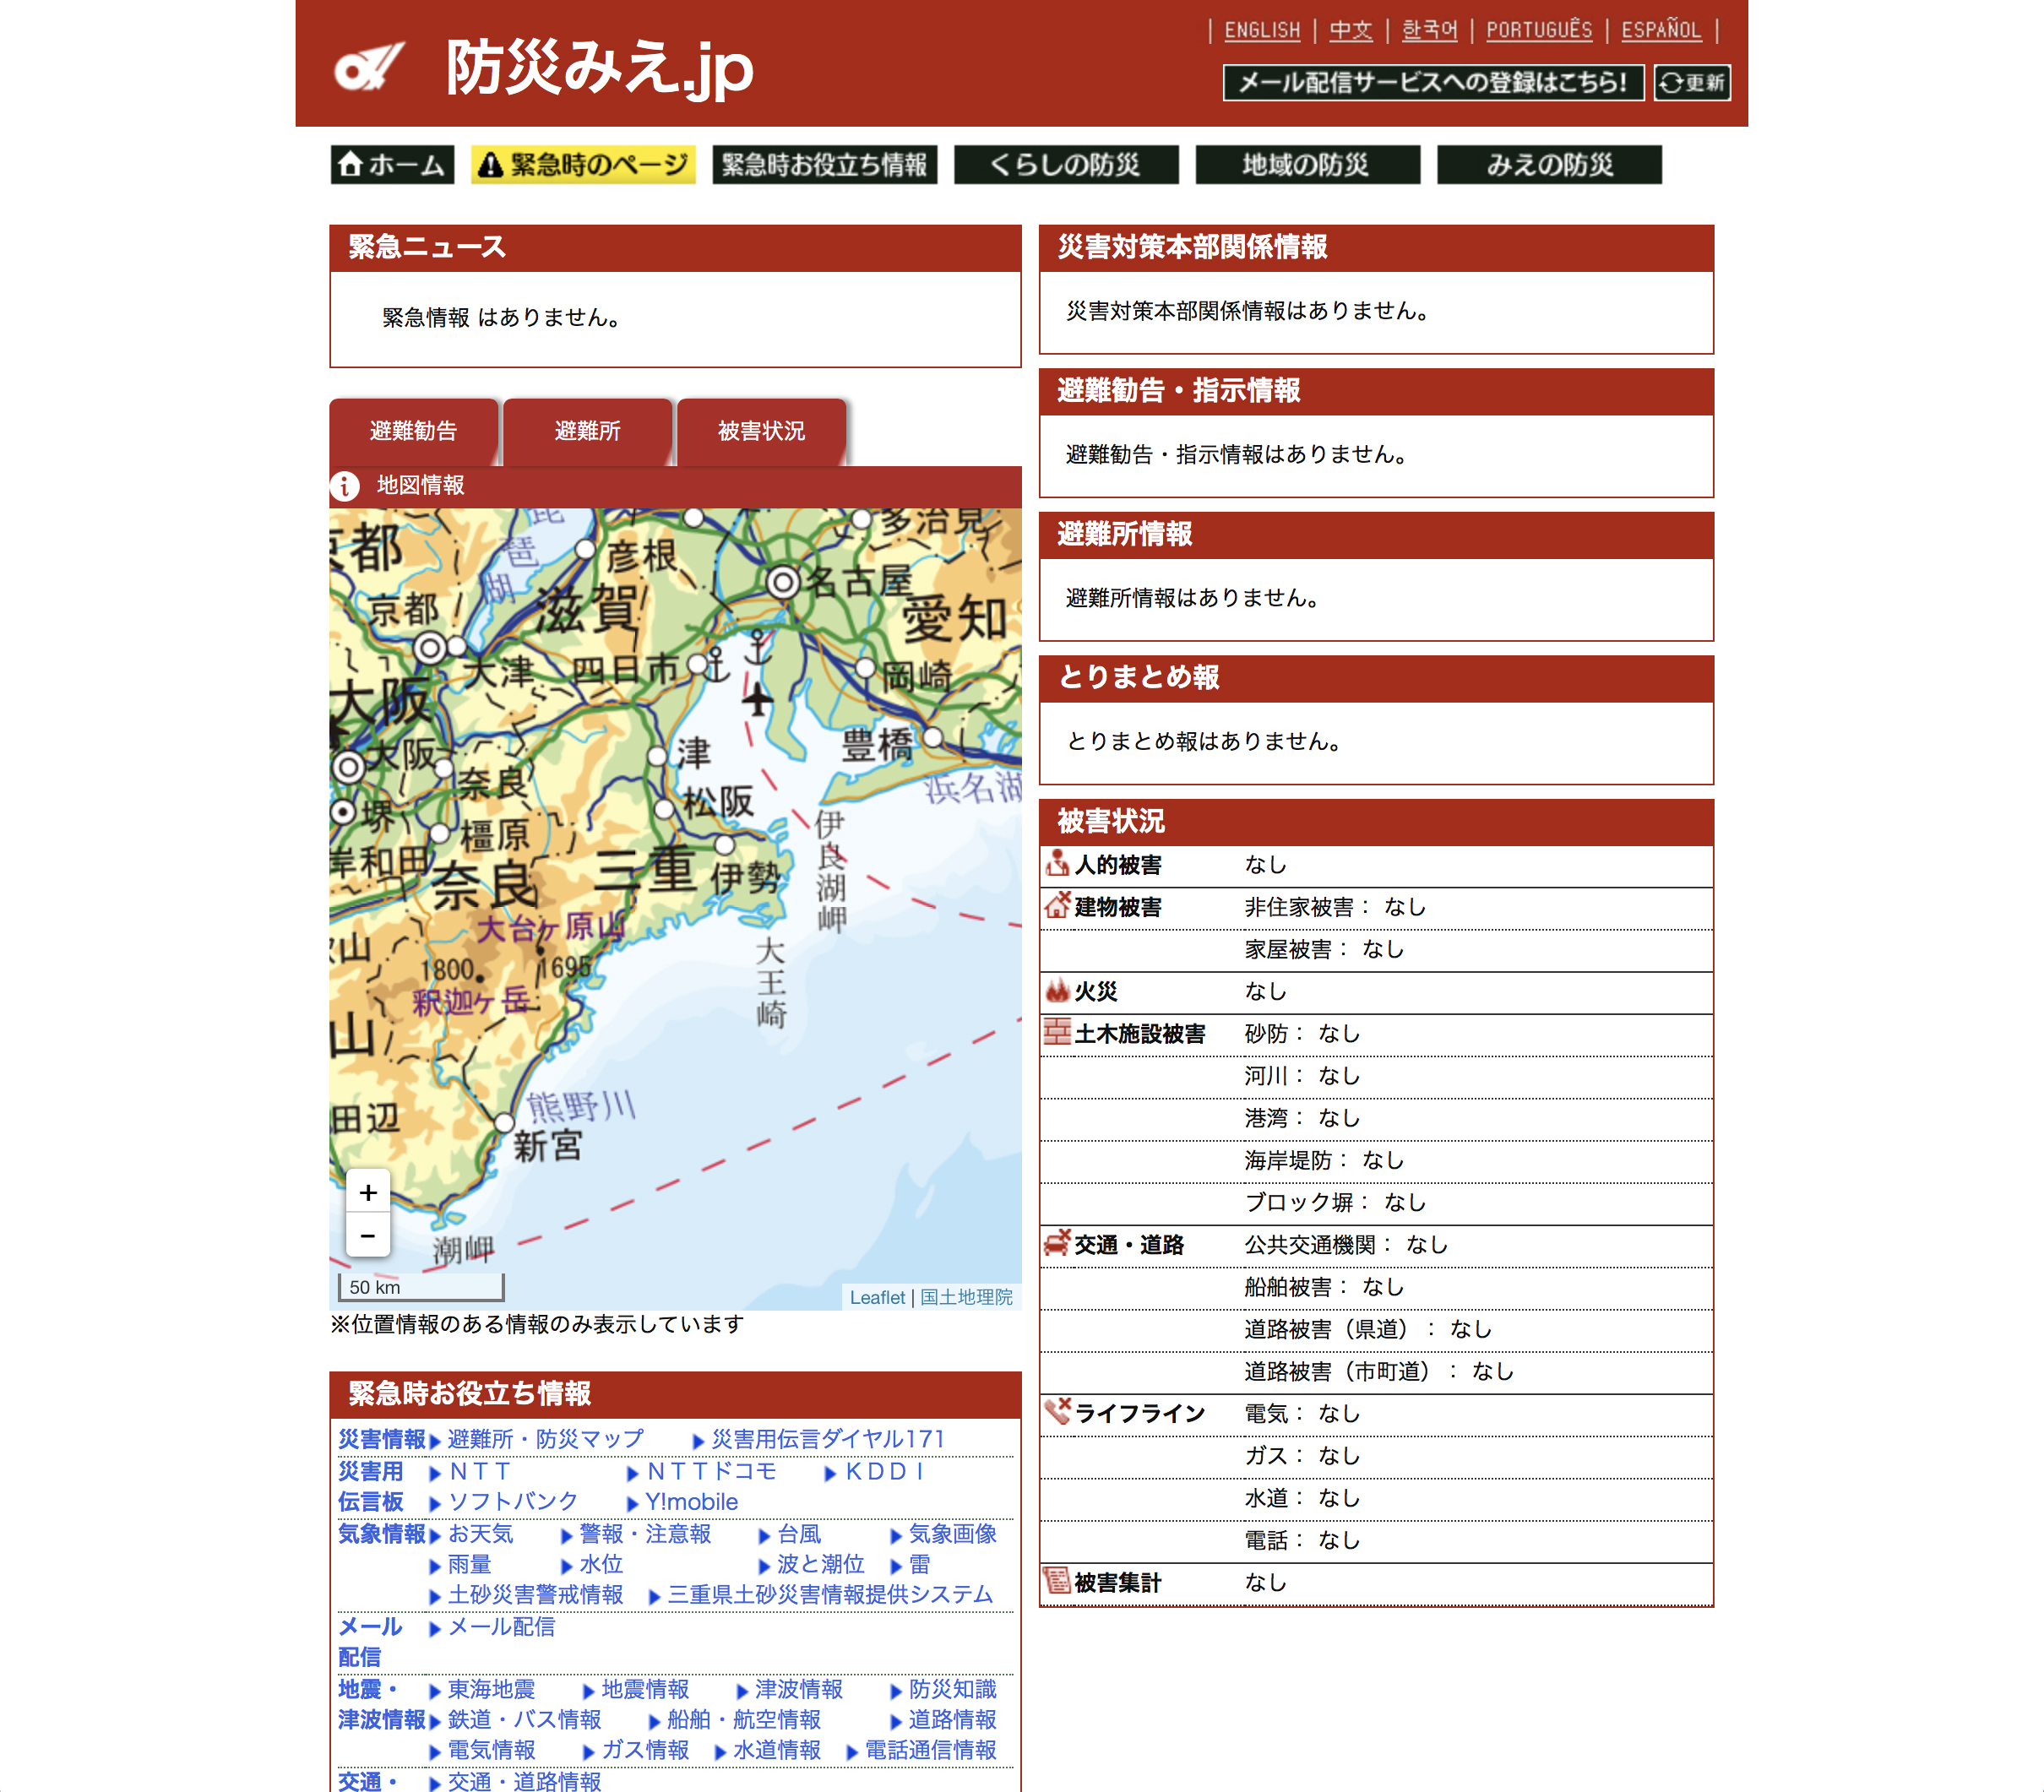 4月にリニューアルされた「防災みえ.jp」（http://www.bosaimie.jp/）。緊急時のページでは、被害状況などを地図上で視覚的に確認できる。